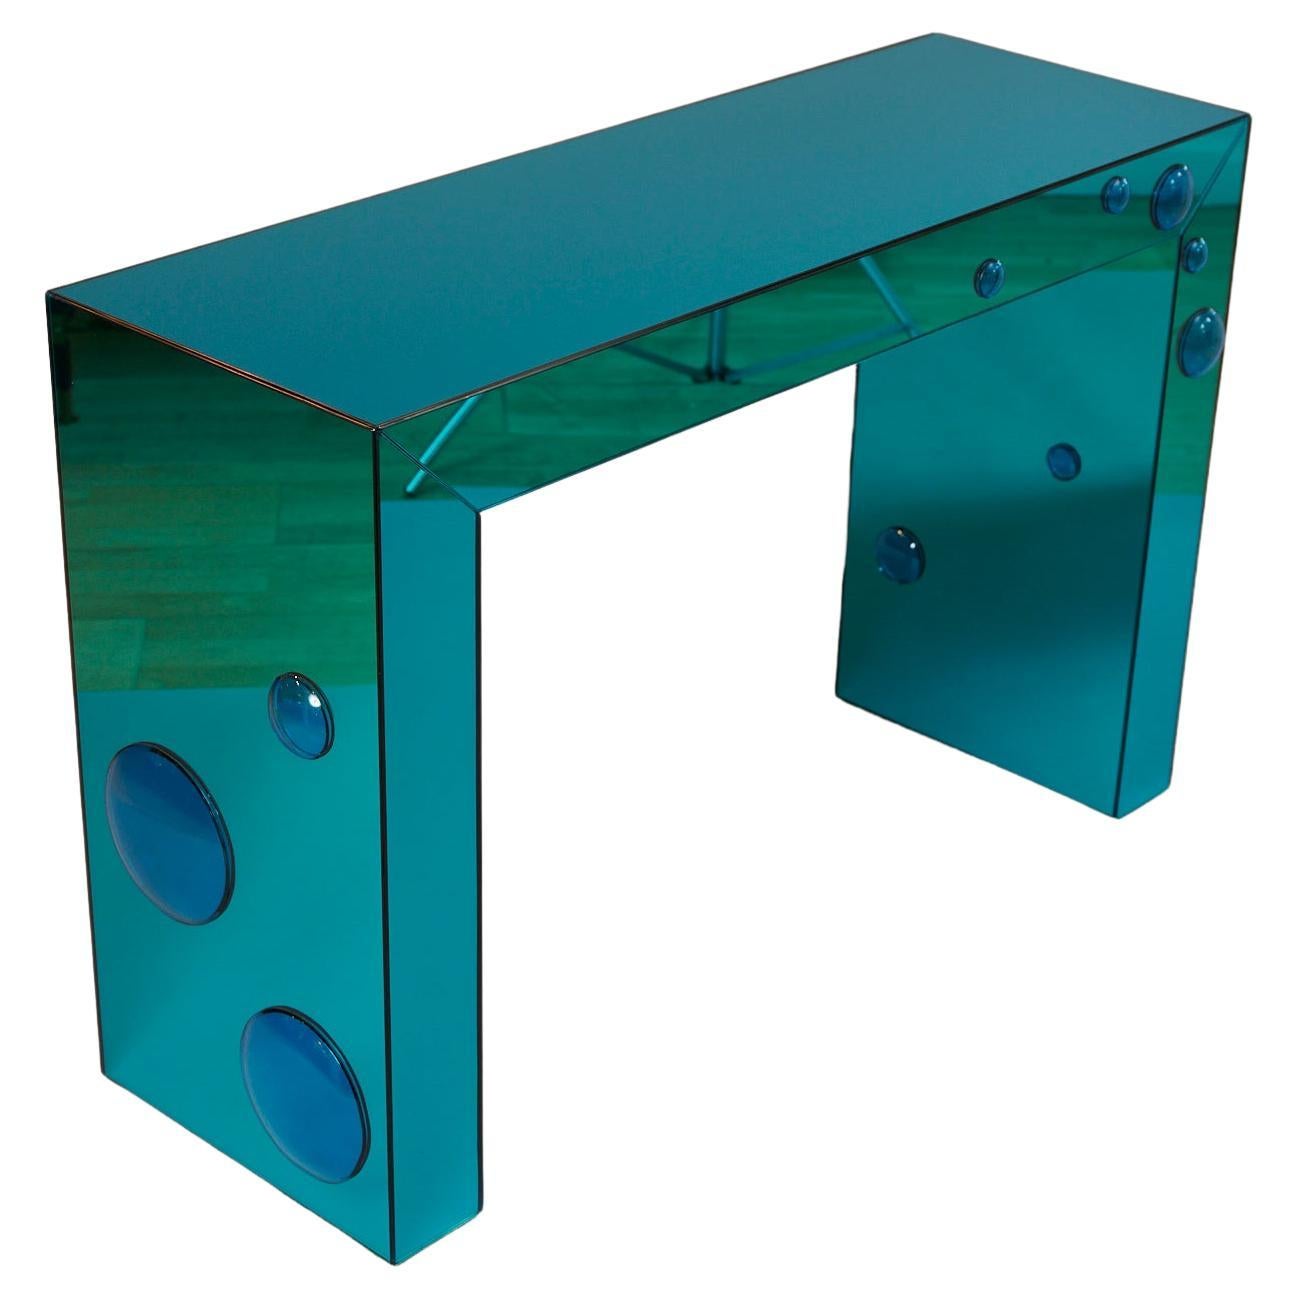 Table console « Seagreen » en miroir avec taches de bulles en verre bleu